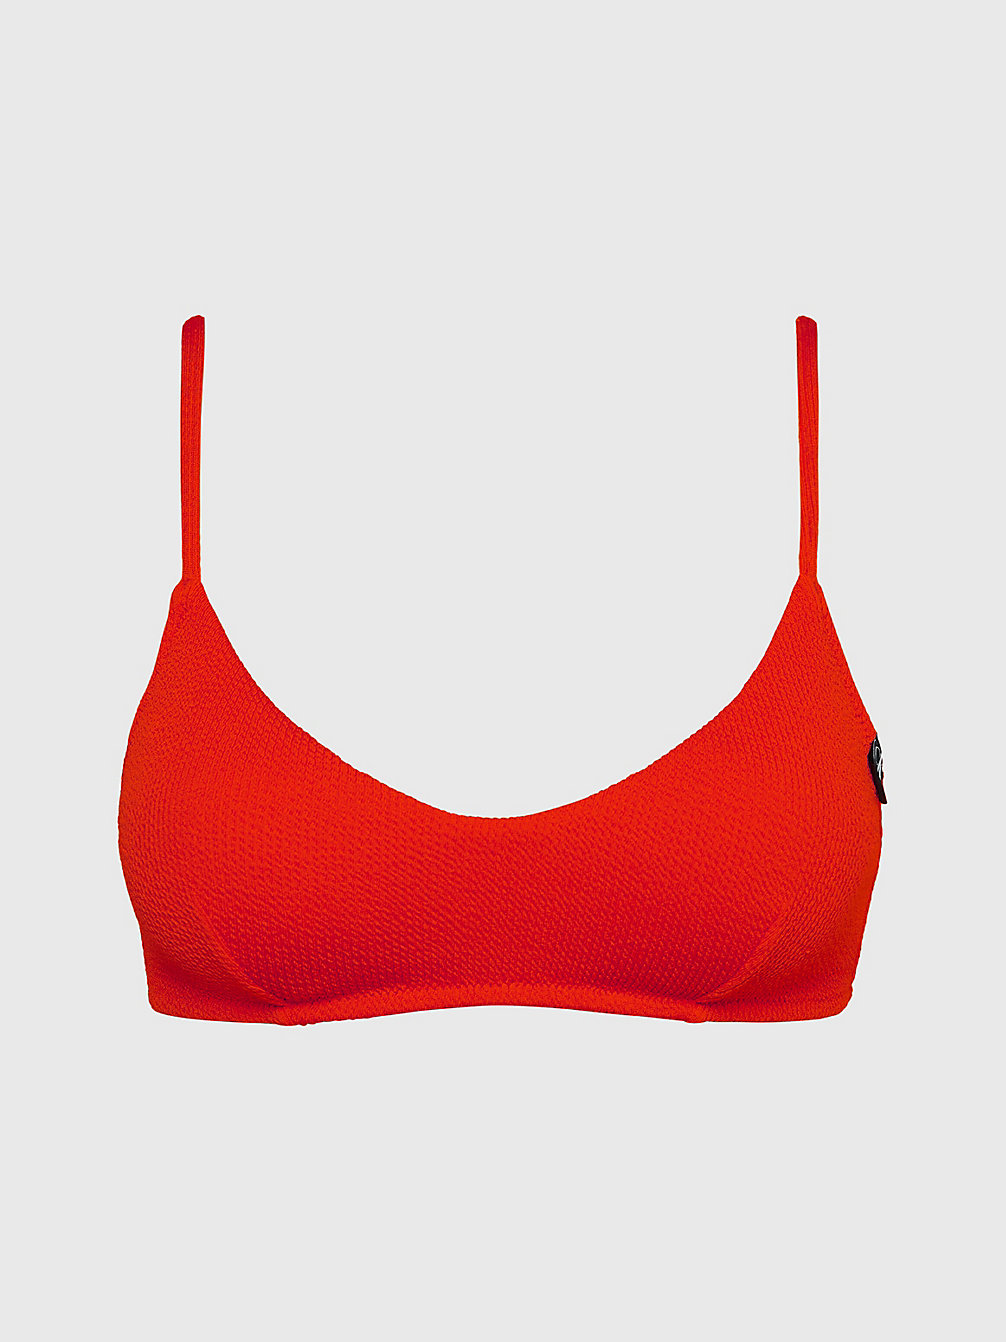 CAJUN RED > Bralette Bikinitop - CK Texture > undefined dames - Calvin Klein